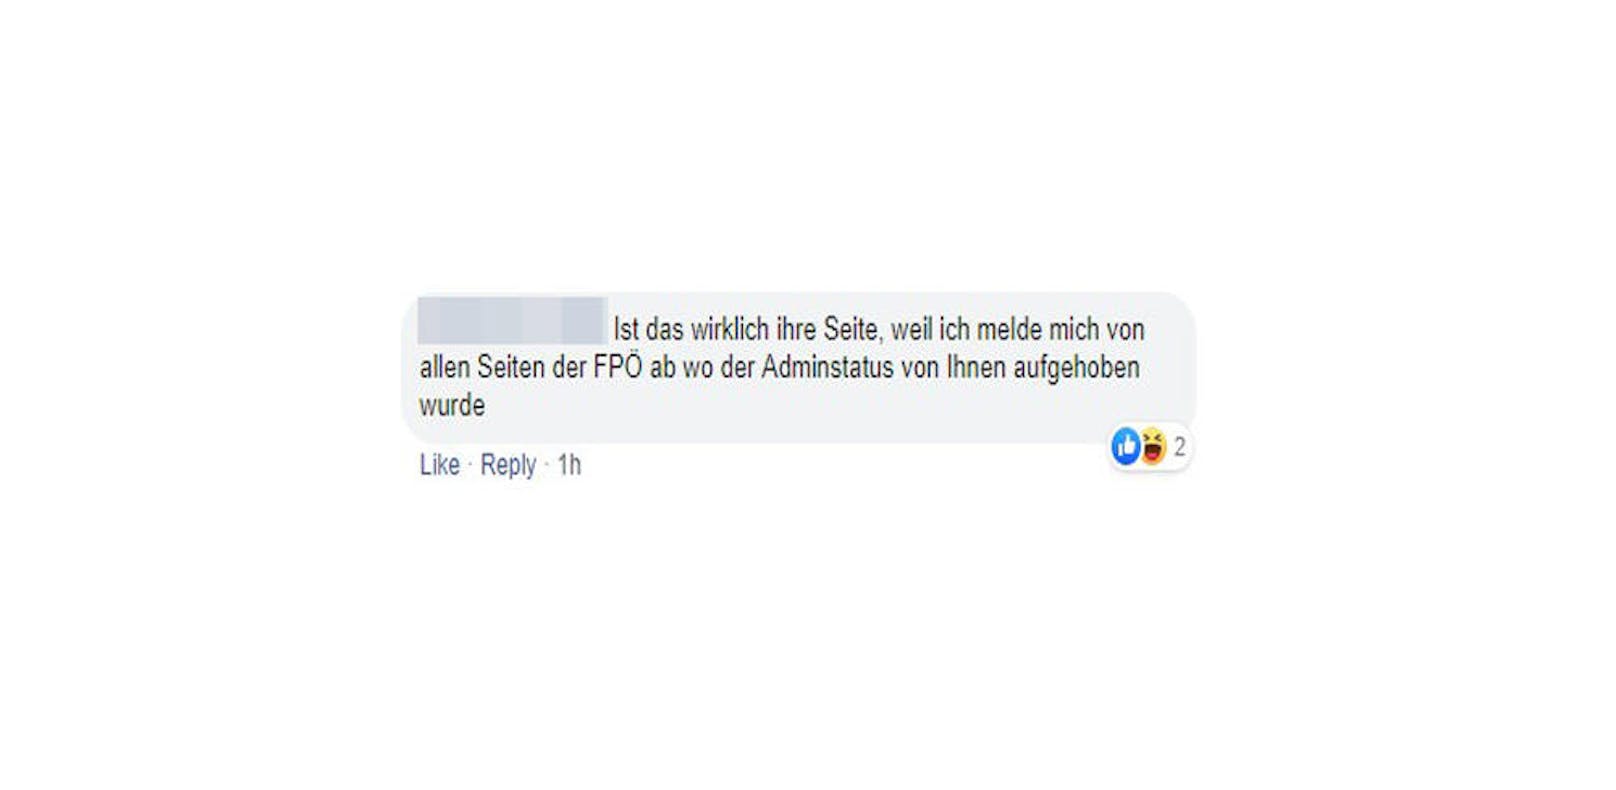 Das wirkt scheinbar schon: Fans strafen die Partei mit "entliken": "Ist das wirklich Ihre Seite, weil ich melde mich von allen Seiten der FPÖ ab wo der Adminstatus von Ihnen aufgehoben wurde", sagt eine Userin.